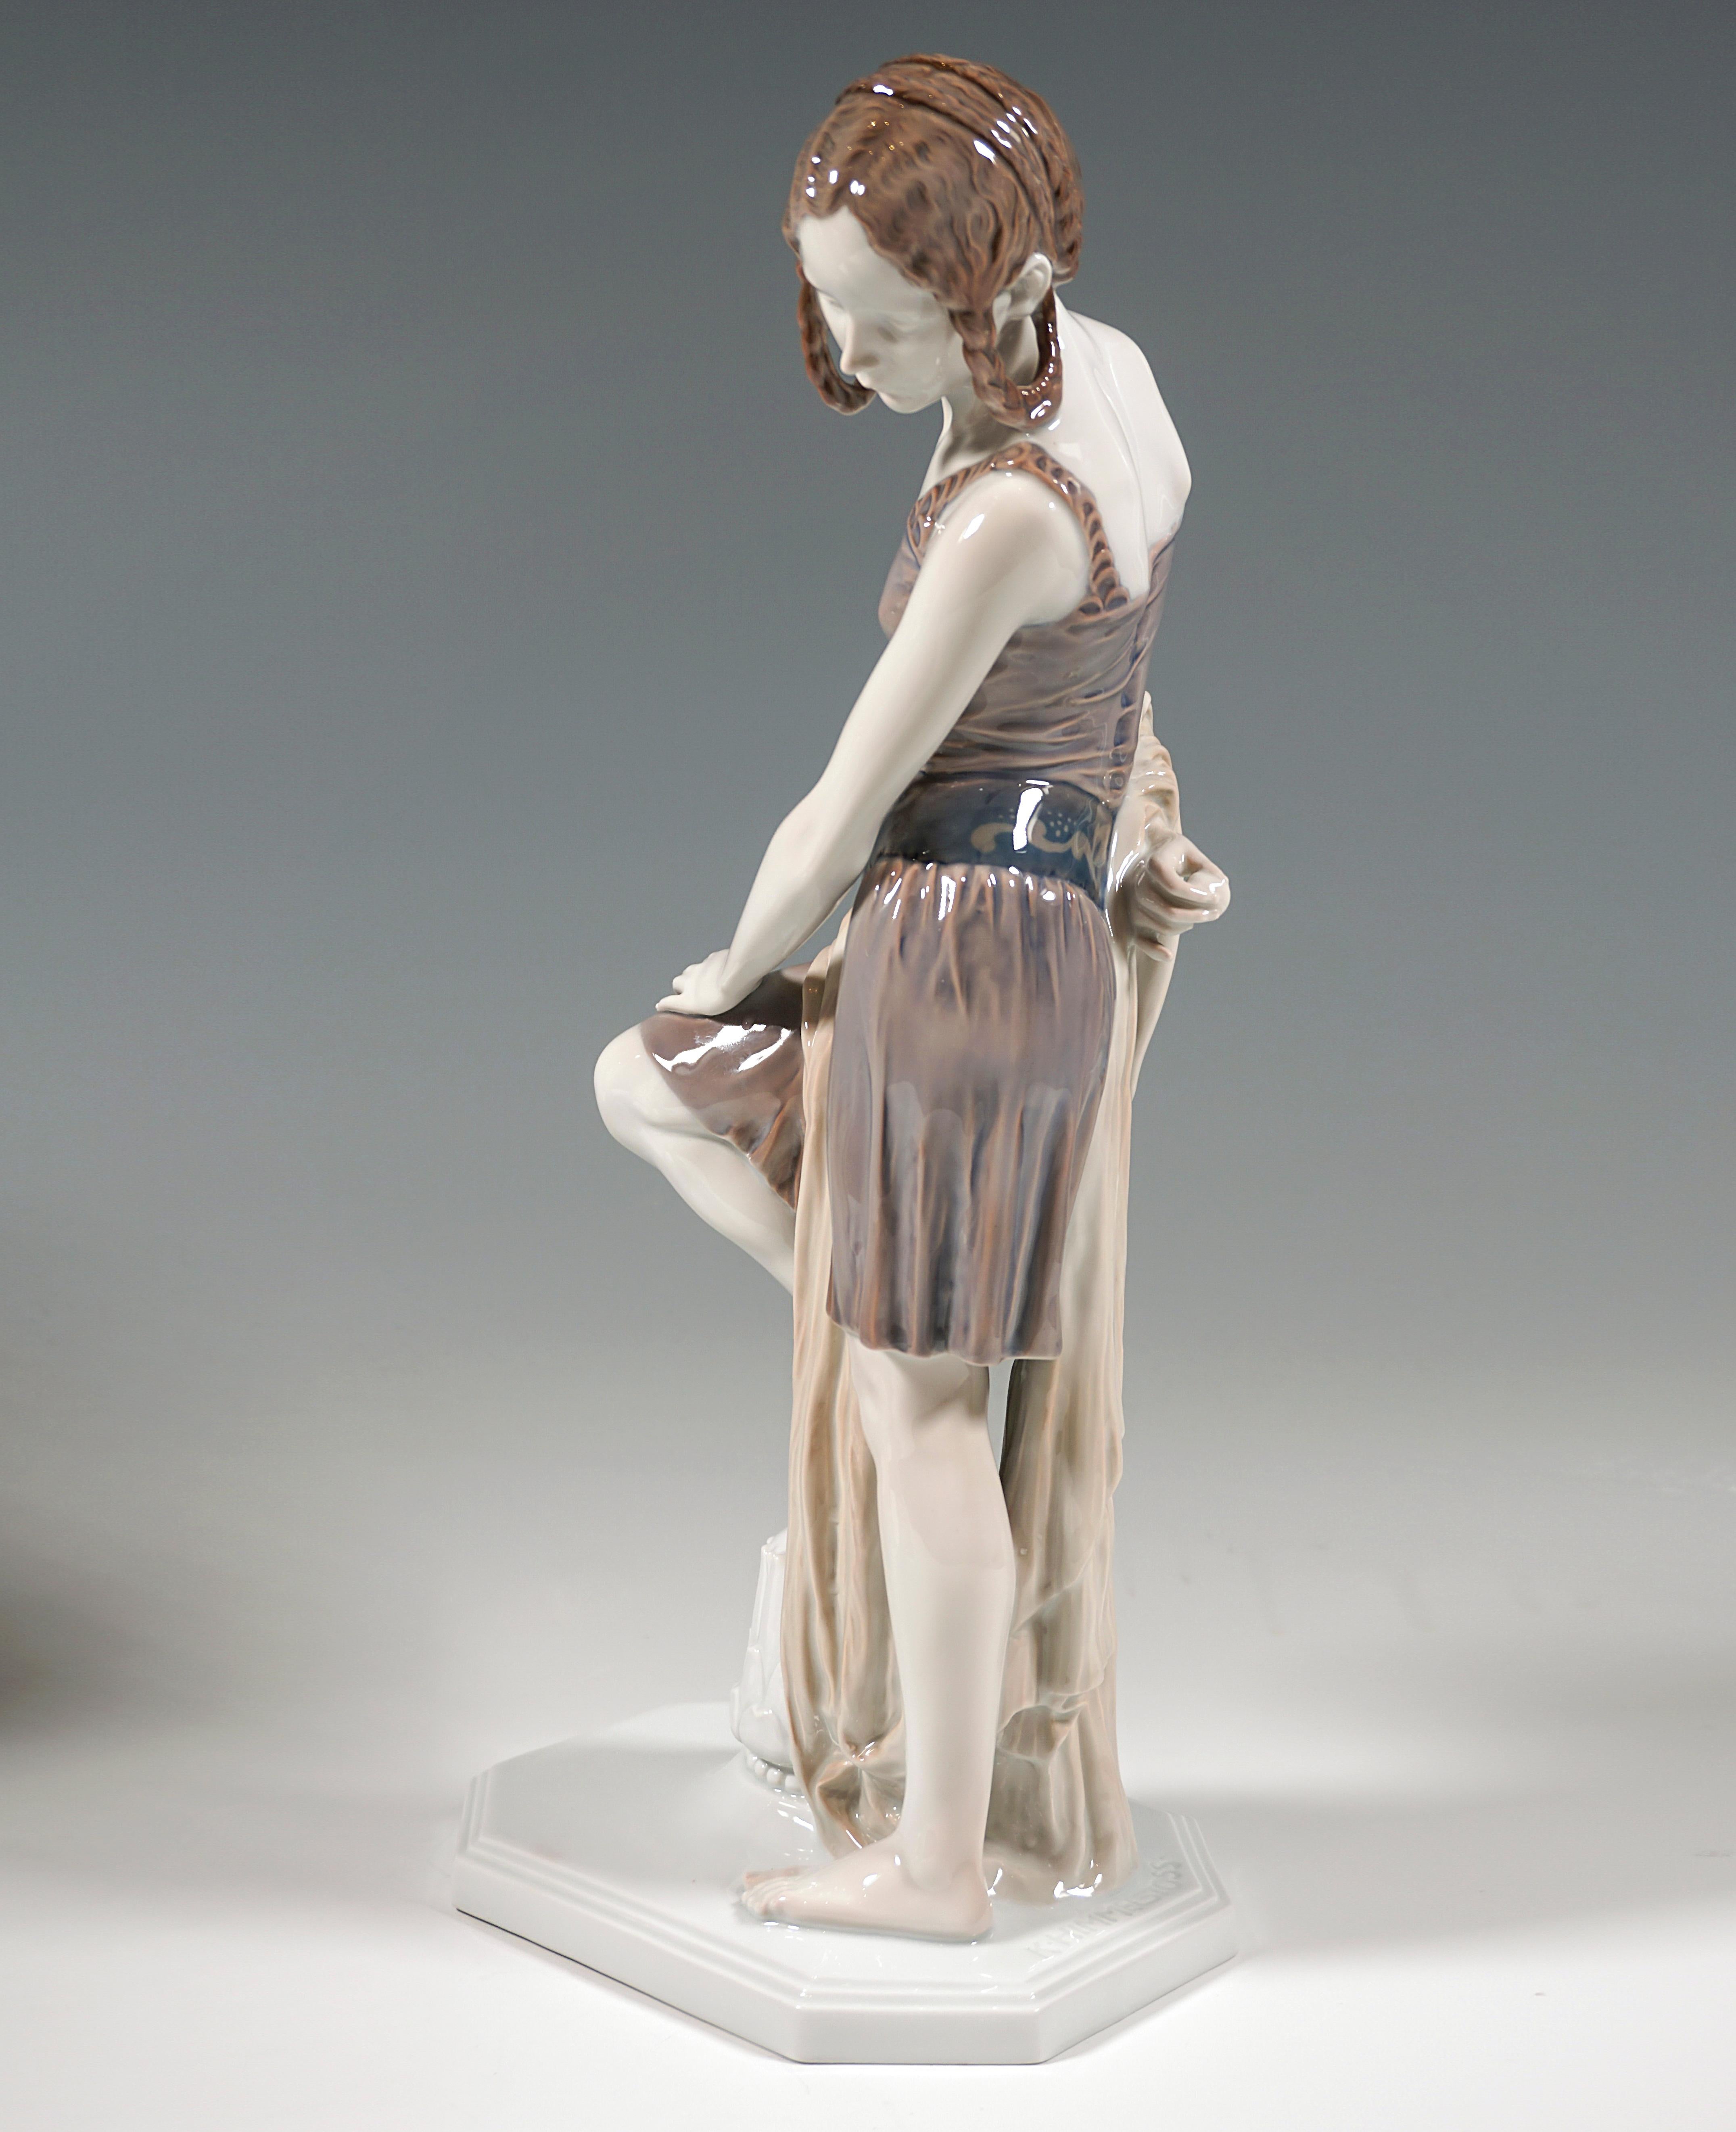 Ausgezeichnete seltene Rosenthal-Figur aus den 1920er Jahren:
Junge Frau in kurzem Trägerkleid mit kunstvoll geflochtenem und hochgestecktem Haar und 
verziertes Bauchband, Kopf nach links gedreht und zu Boden blickend, und 
ein langes, bis zum